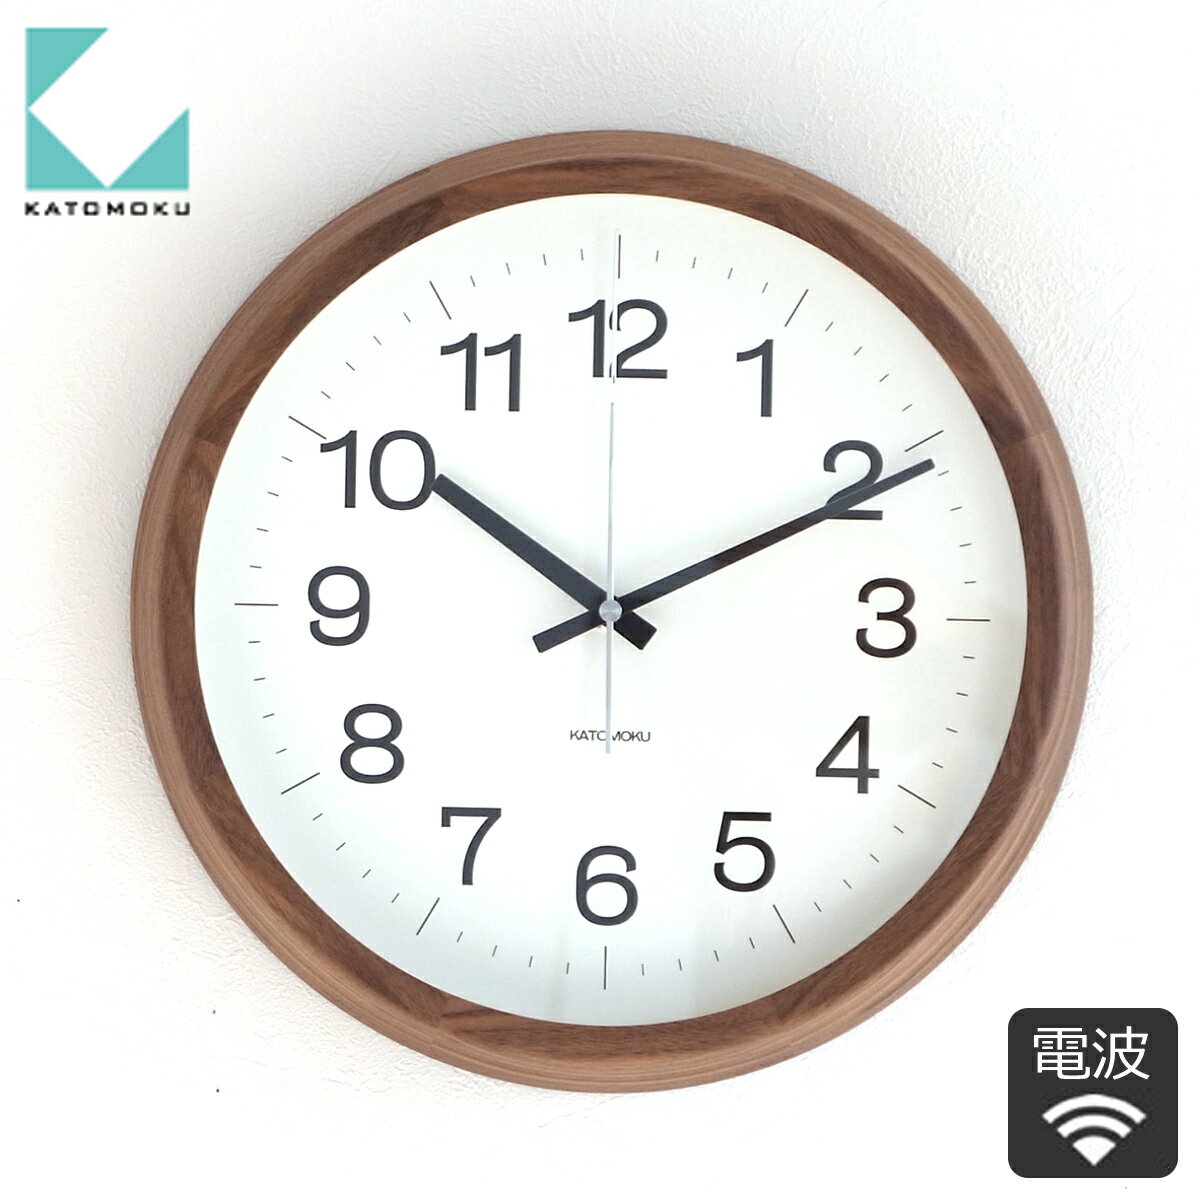 加藤木工 カトモク KATOMOKU Muku clock 16 Lサイズ ウォールナット 電波時計 壁掛け スイープムーブメント KM-113WARC